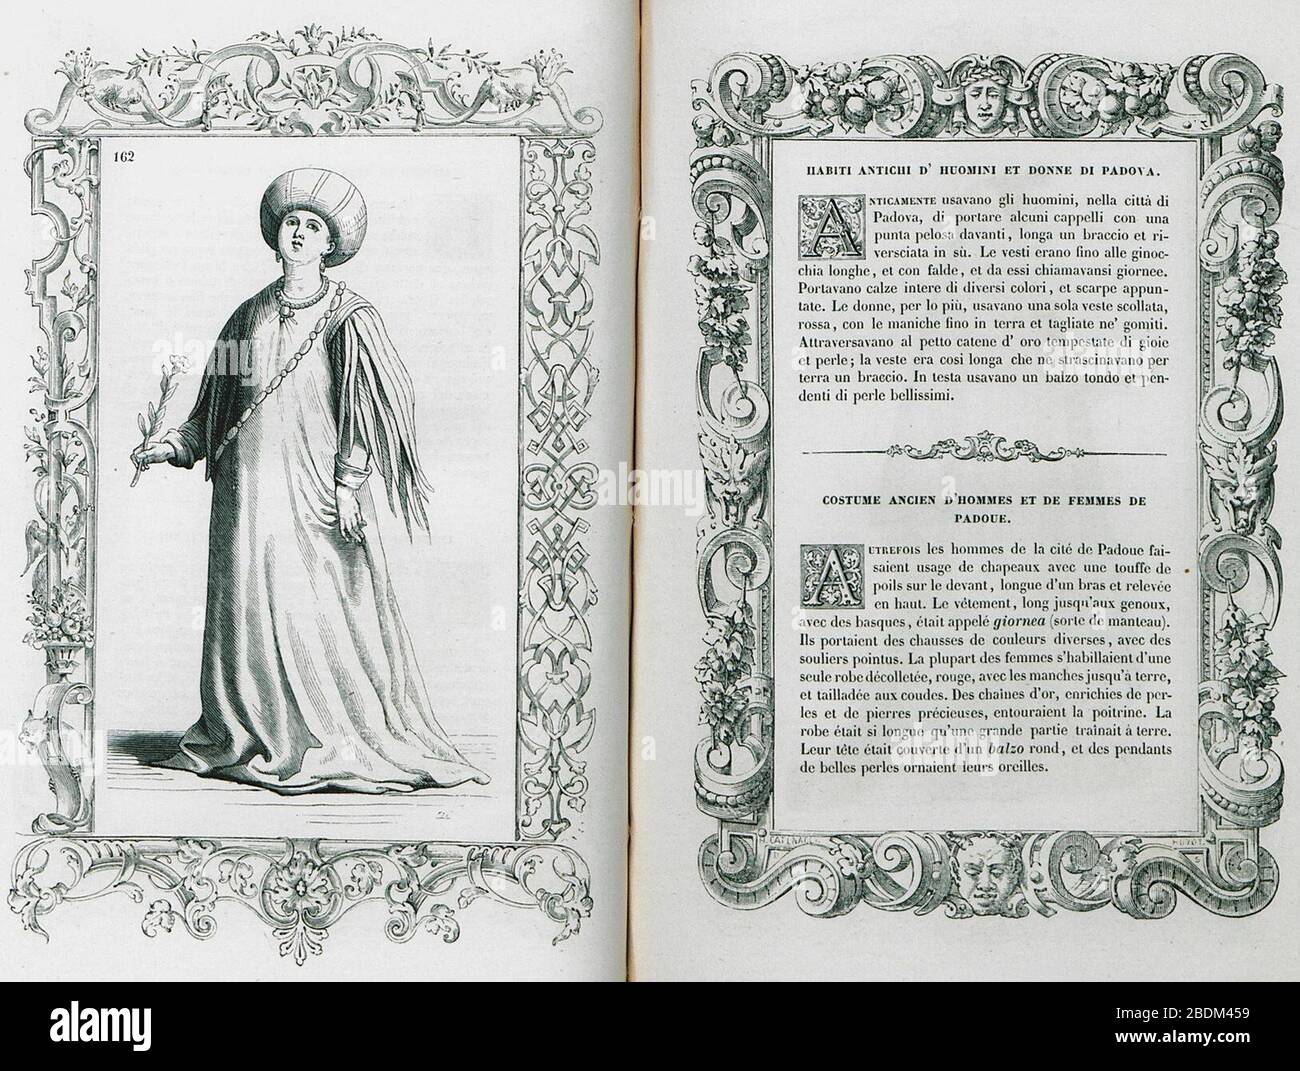 Habiti antichi d'huomini et donne di Padova - Vecellio Cesare - 1860. Stockfoto